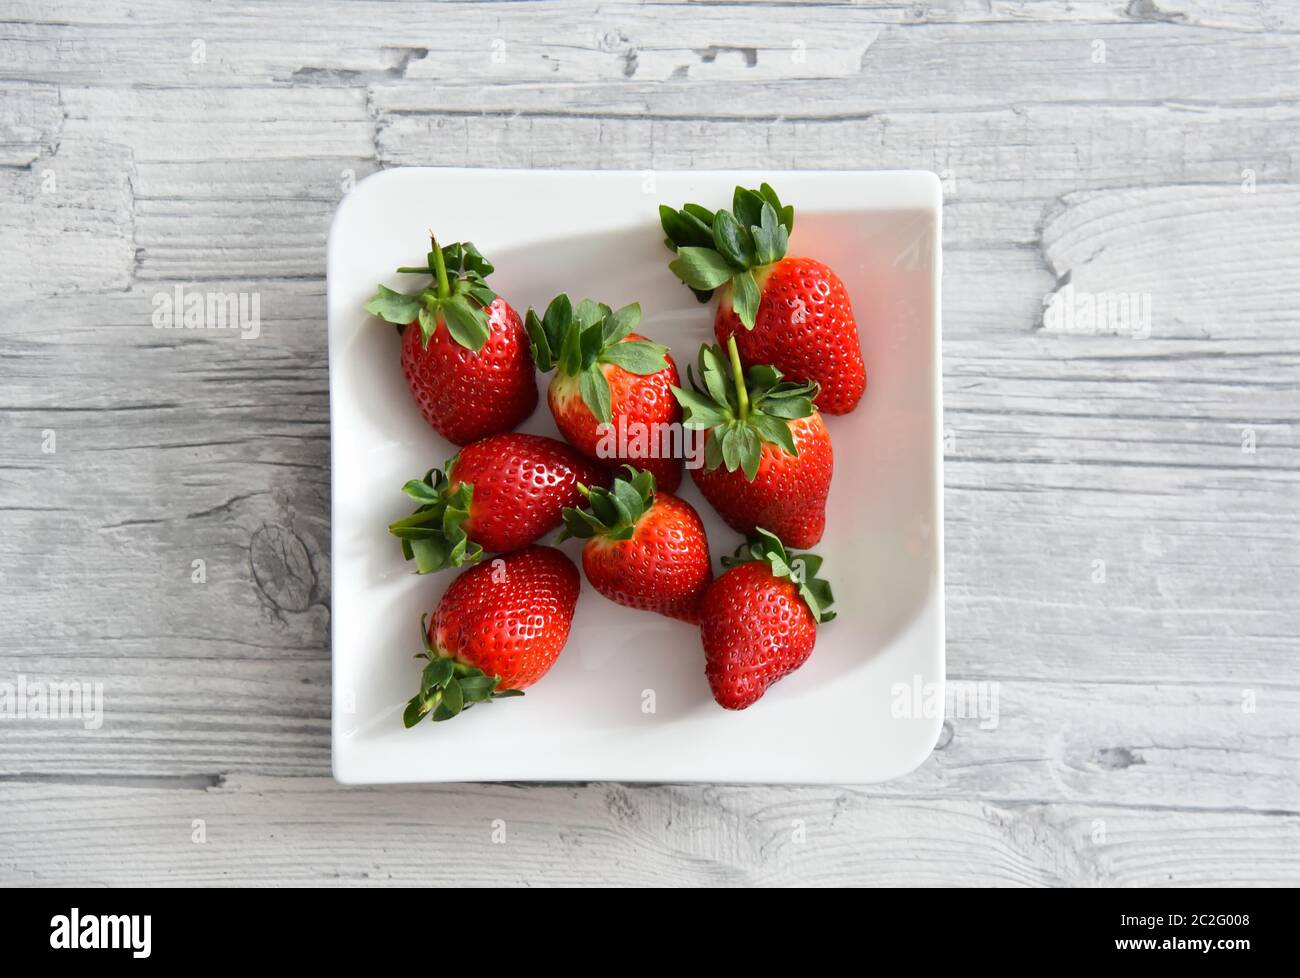 Frische, saftige rote Erdbeeren mit grünen Blättern auf einem weißen Teller. Hellgrauer Holztisch Hintergrund. Stockfoto